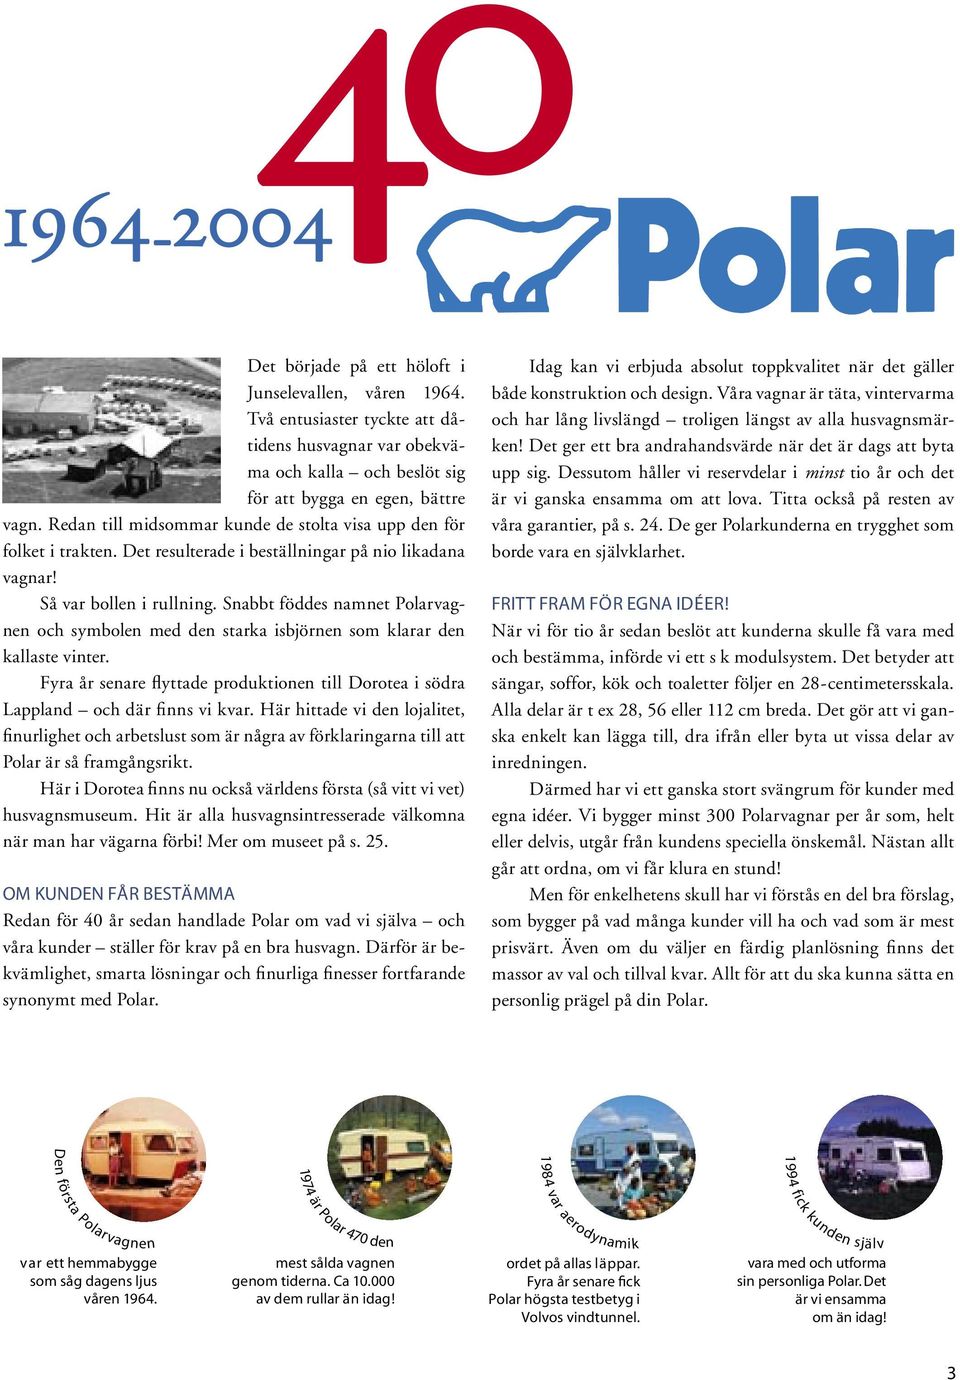 Snabbt föddes namnet Polarvagnen och symbolen med den starka isbjörnen som klarar den kallaste vinter. Fyra år senare flyttade produktionen till Dorotea i södra Lappland och där finns vi kvar.